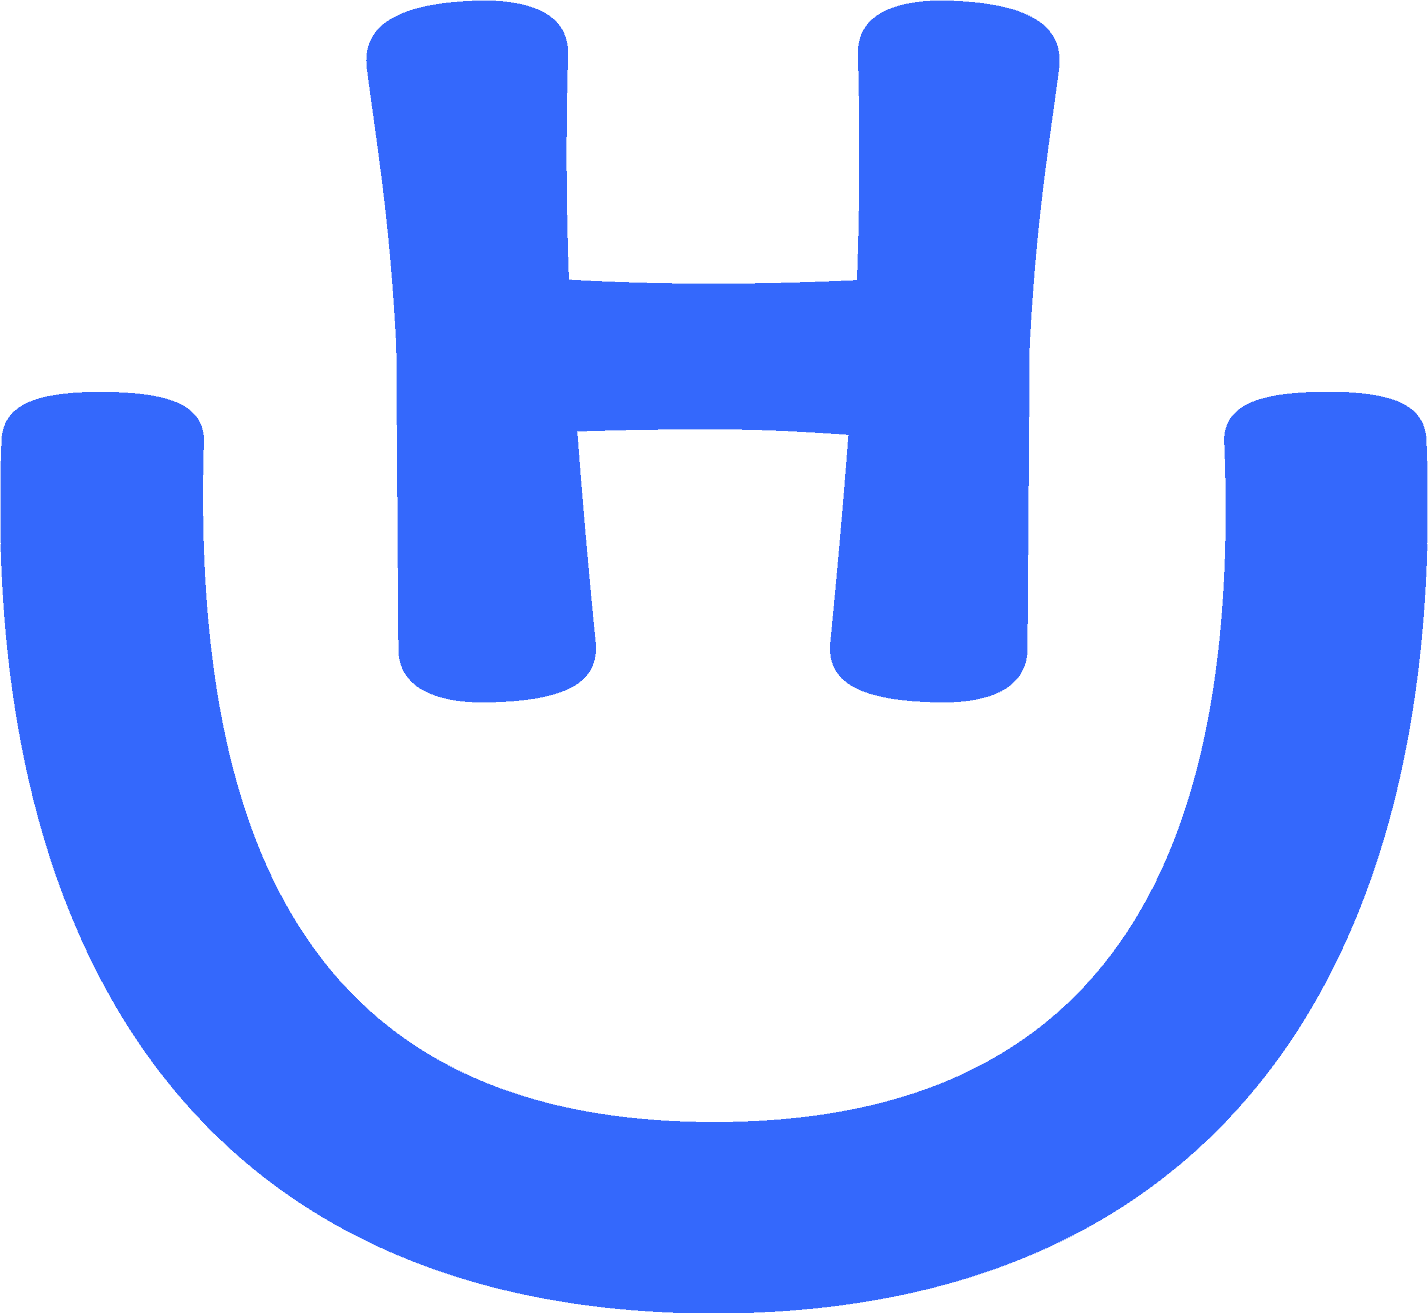 hurb-logo-freelogovectors.net_